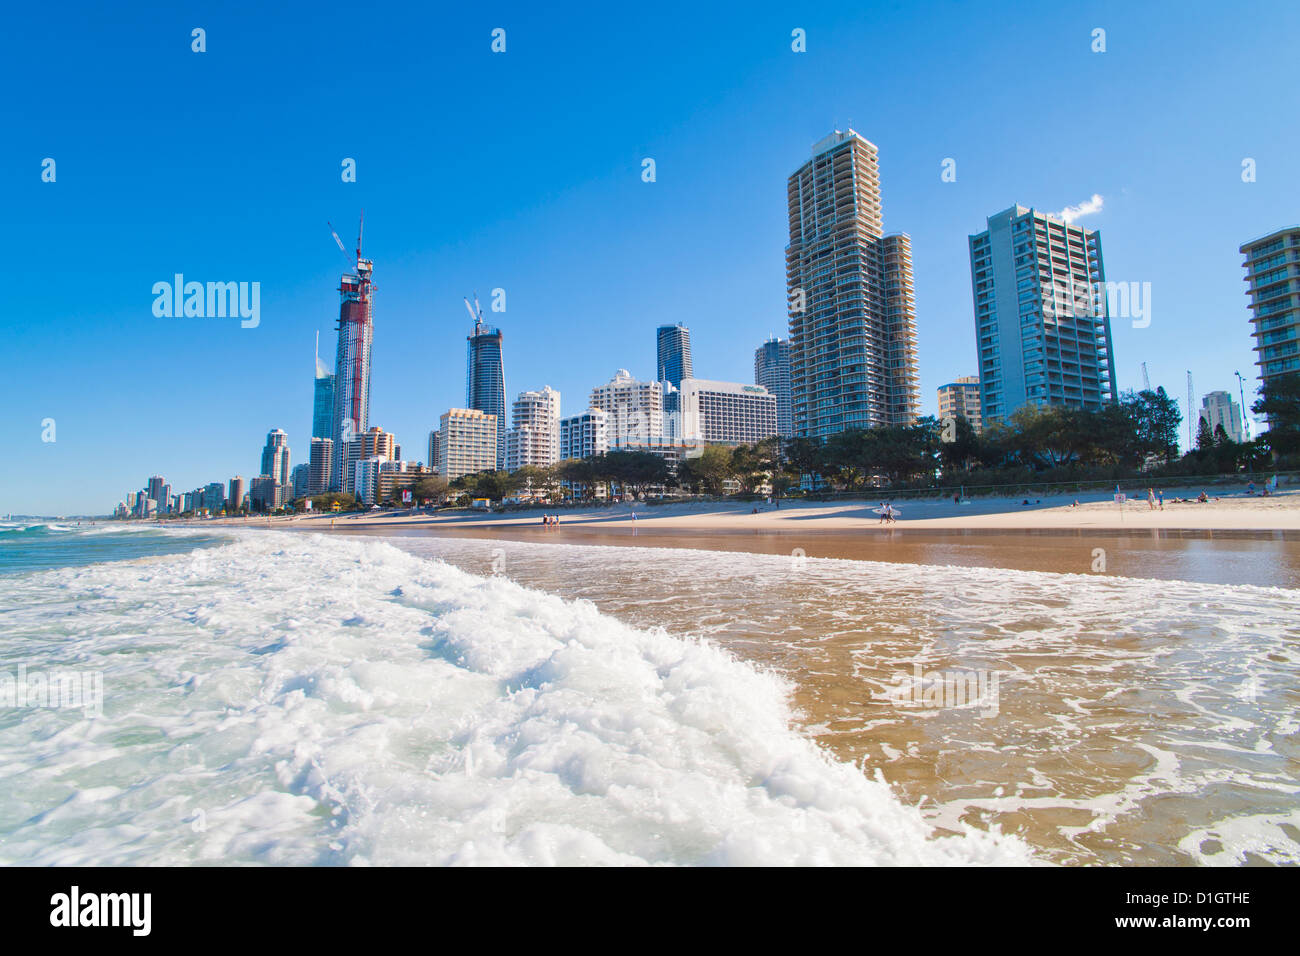 La plage de Surfers Paradise et les immeubles de grande hauteur, la Gold Coast, Queensland, Australie, Pacifique Banque D'Images